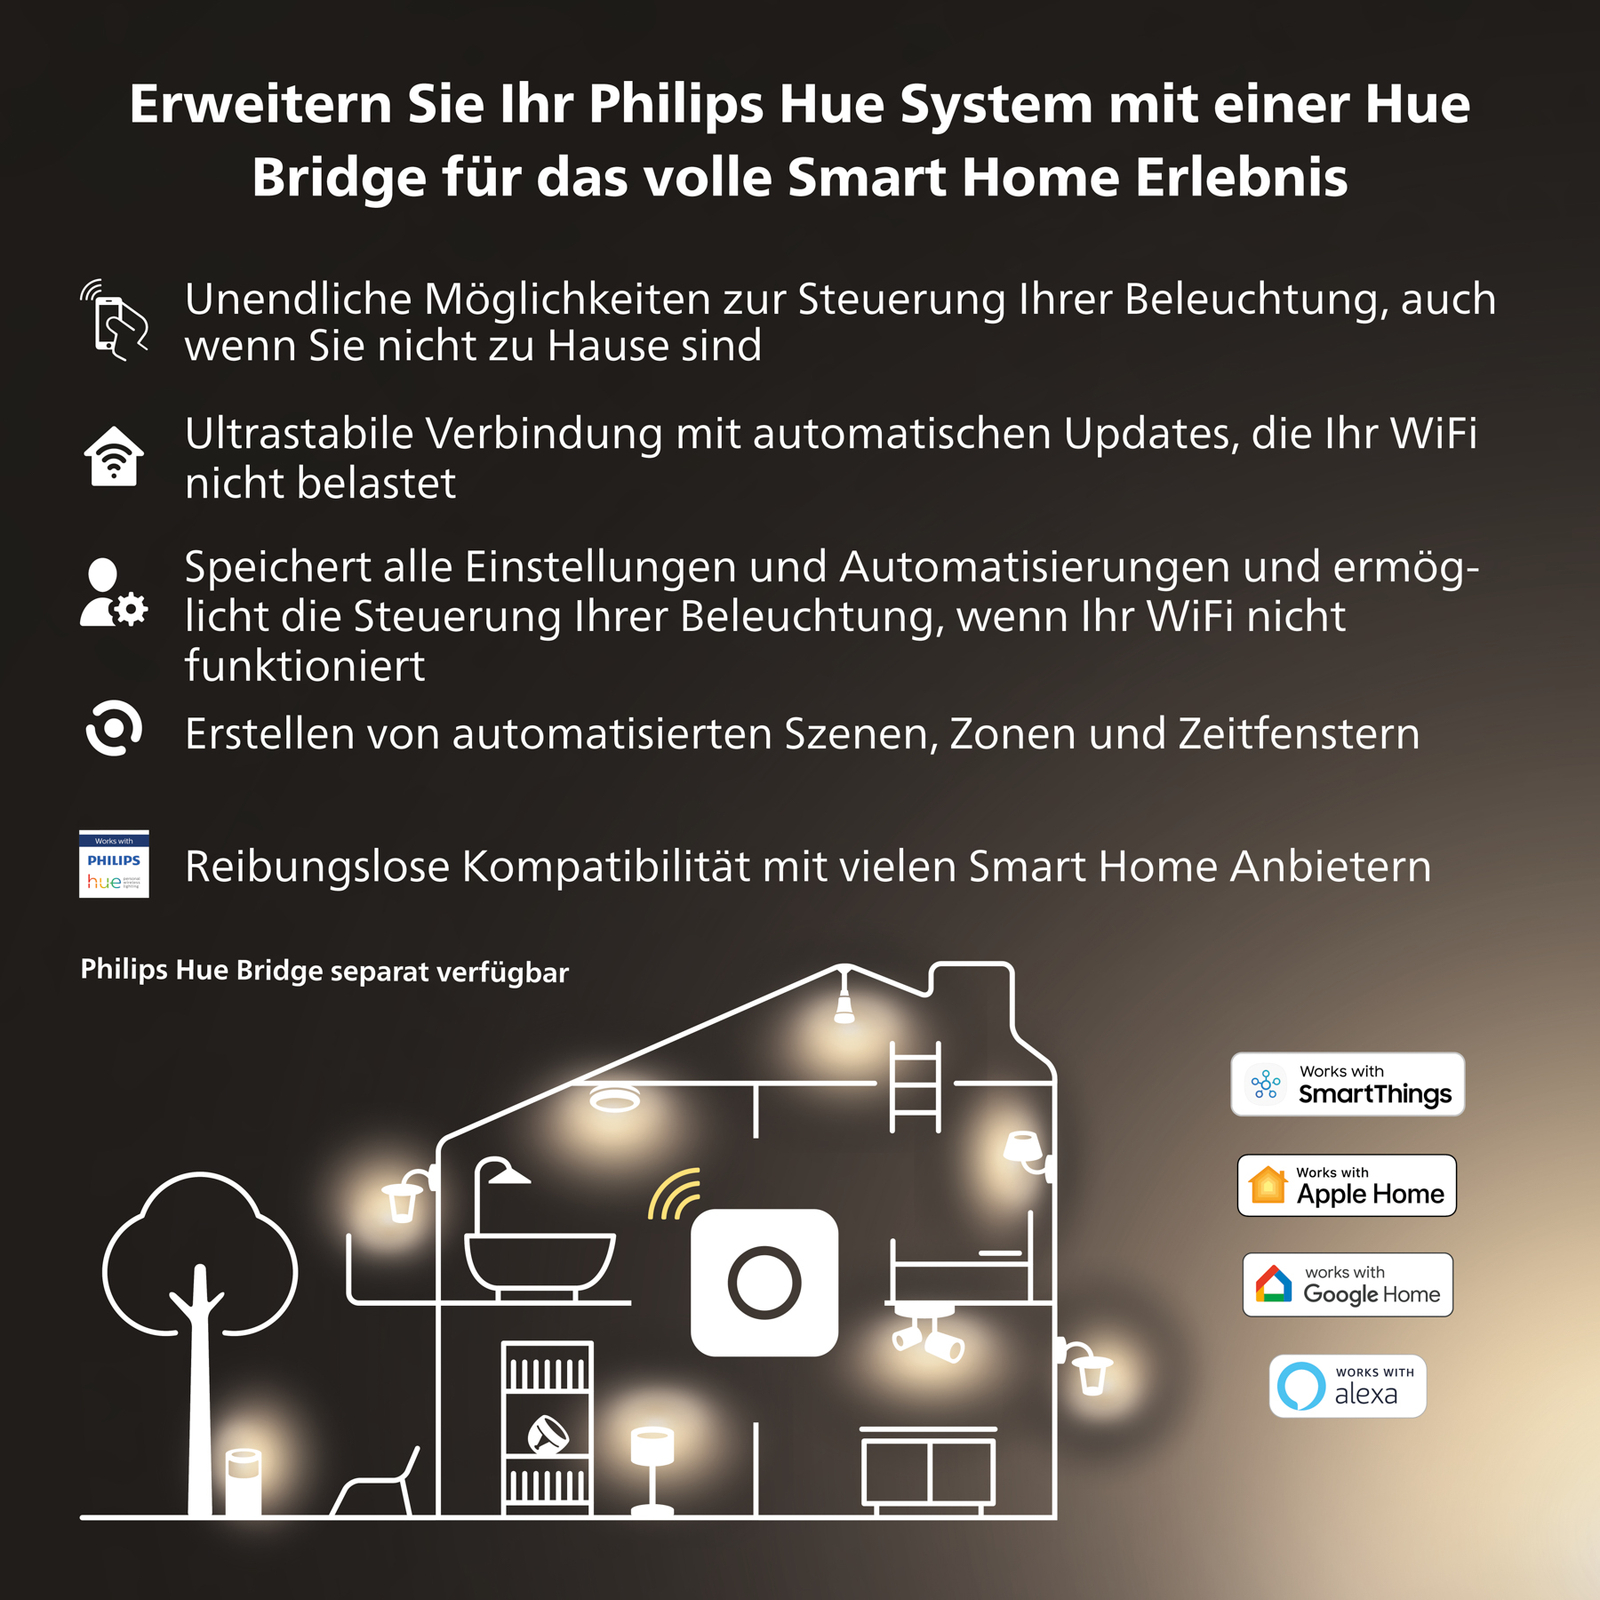 Philips Hue White Ambiance E27 8W LED lámpa, 2db